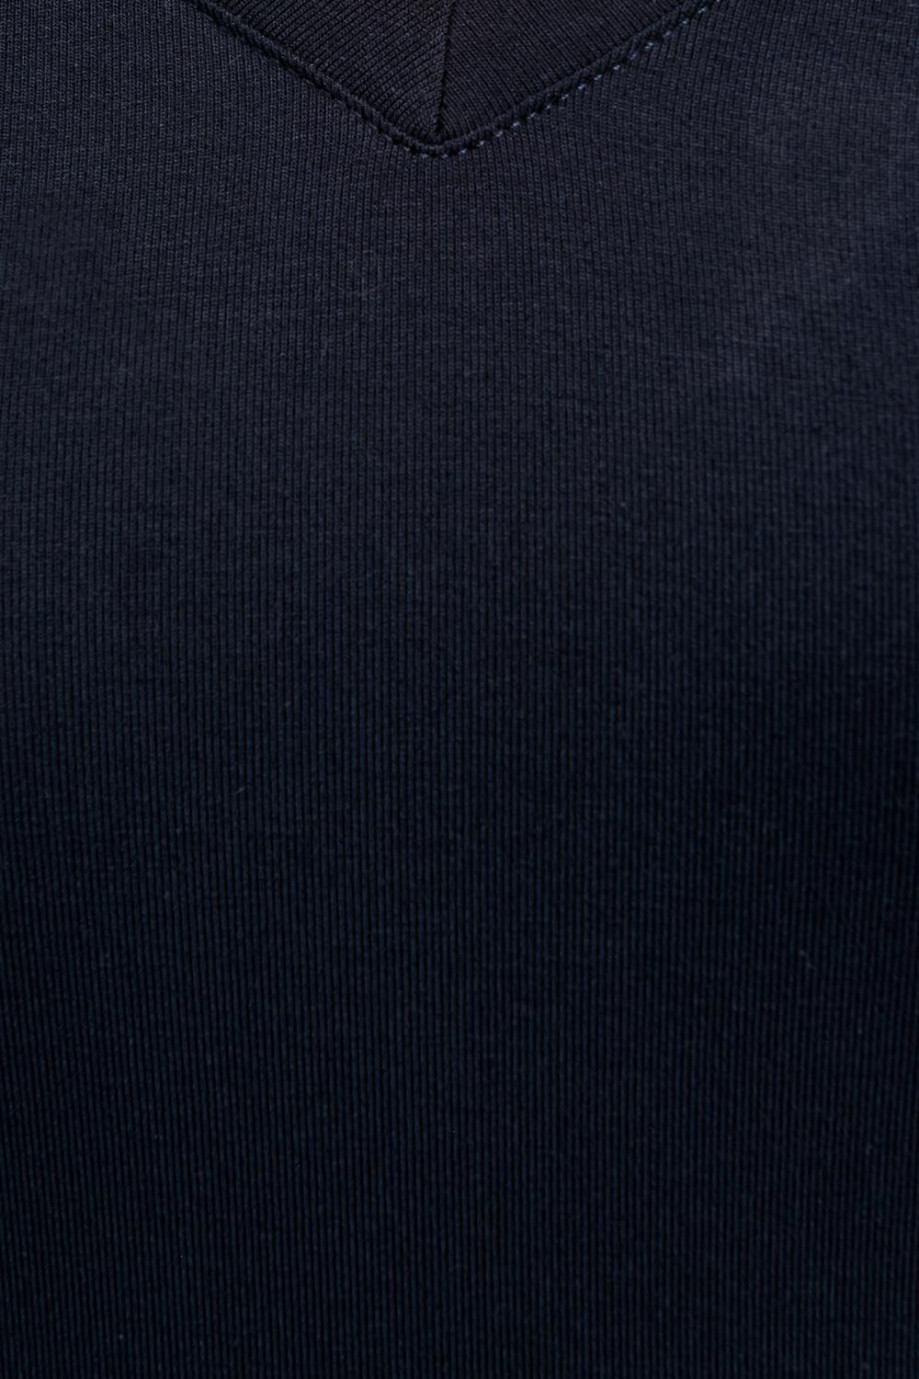 Camiseta cuello en V unicolor con mangas cortas